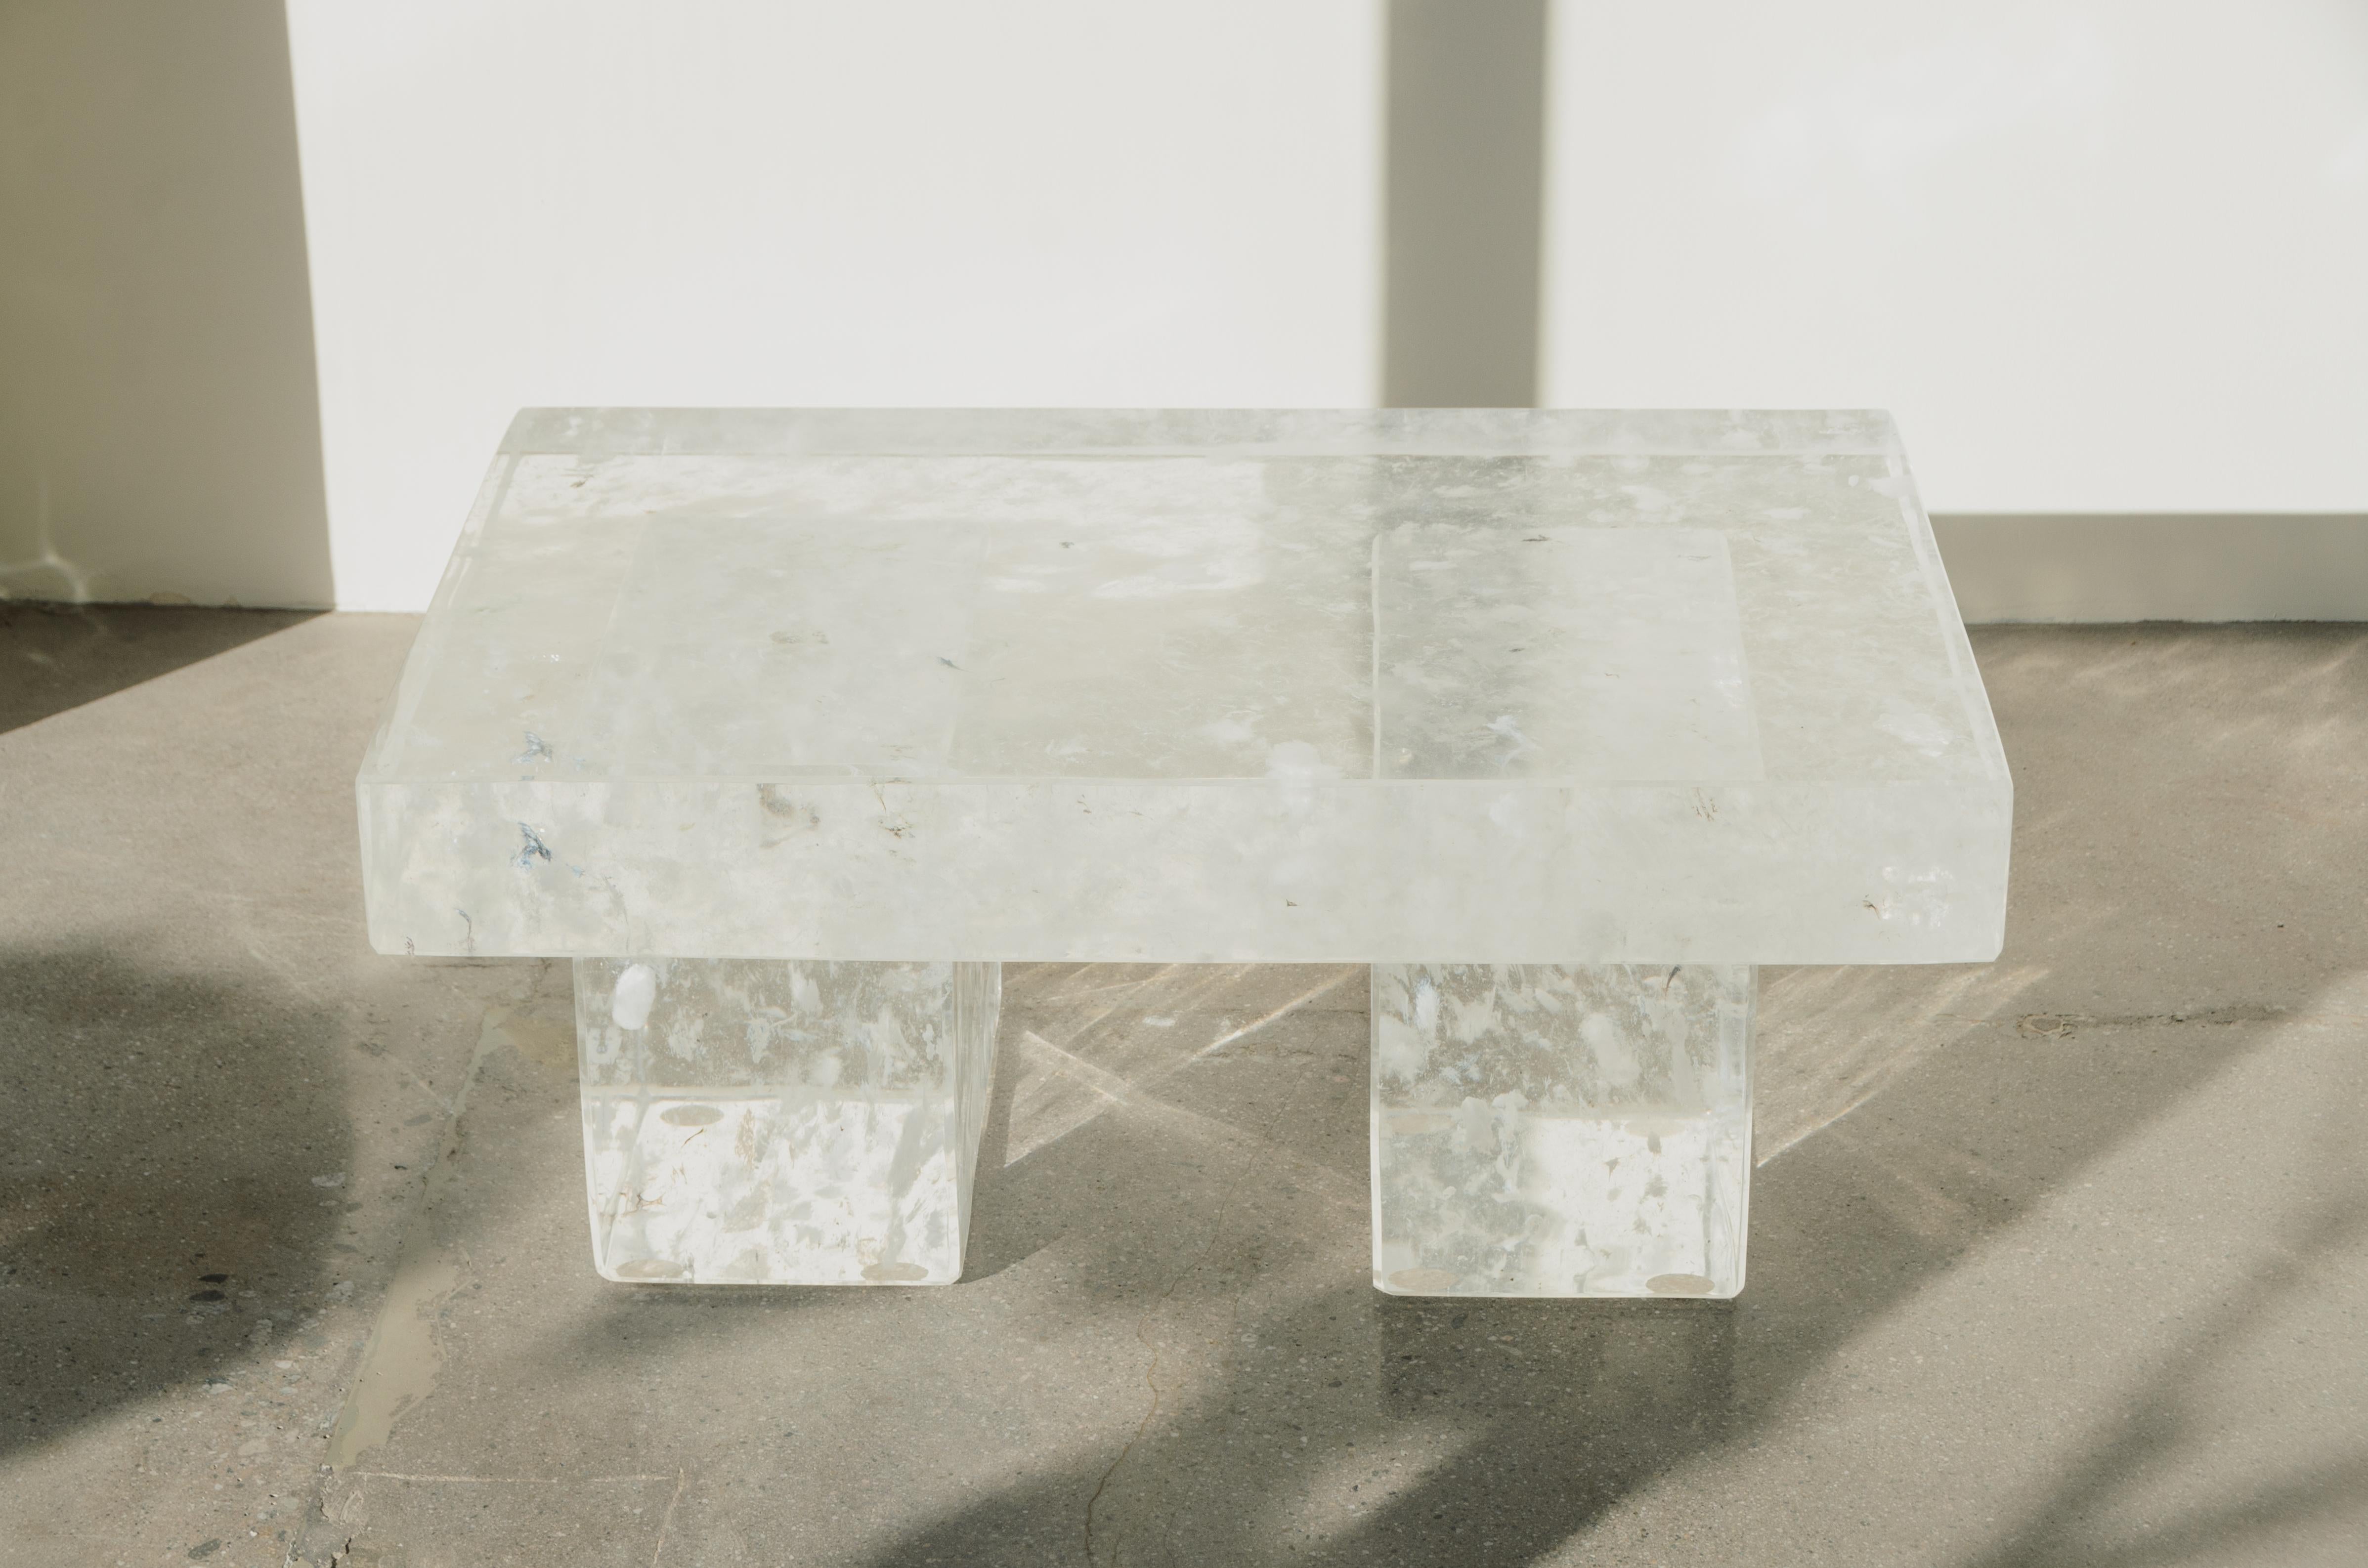 Ensemble de 3 tables
Cristal
Sculpté à la main
Chaque pièce est fabriquée individuellement et est unique.
Les inclusions de cristaux varient 
